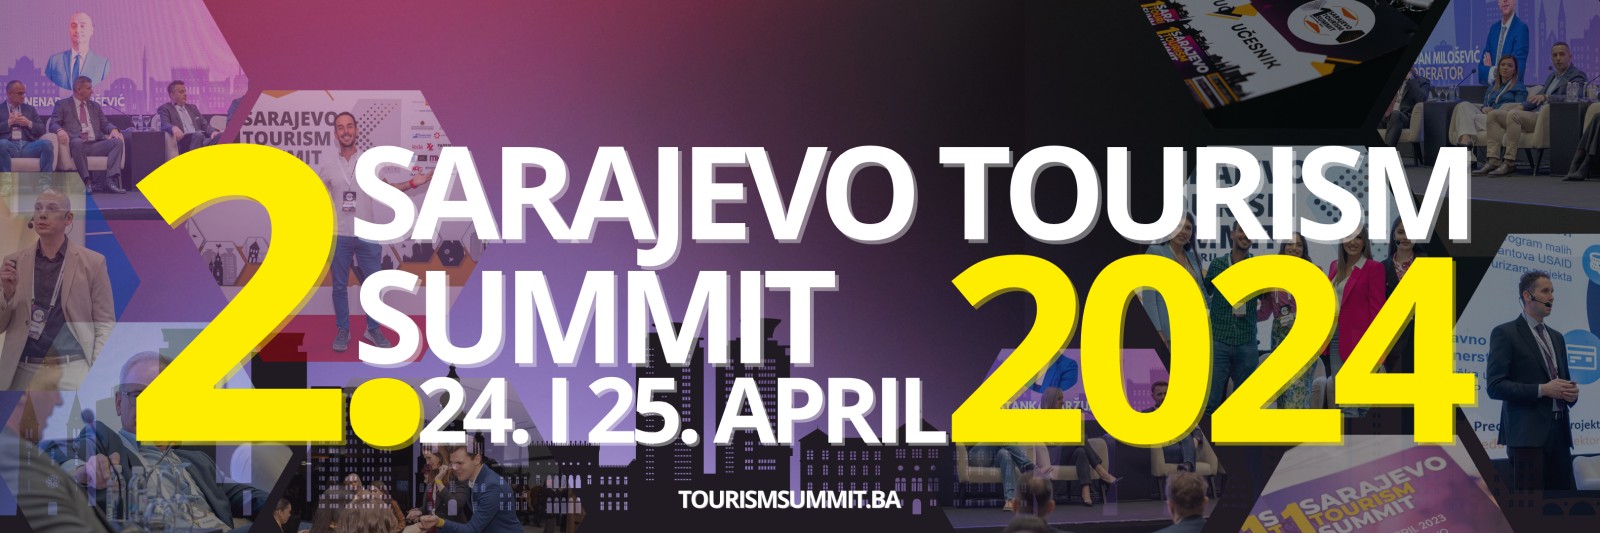 sarajevo tourism summit 2023